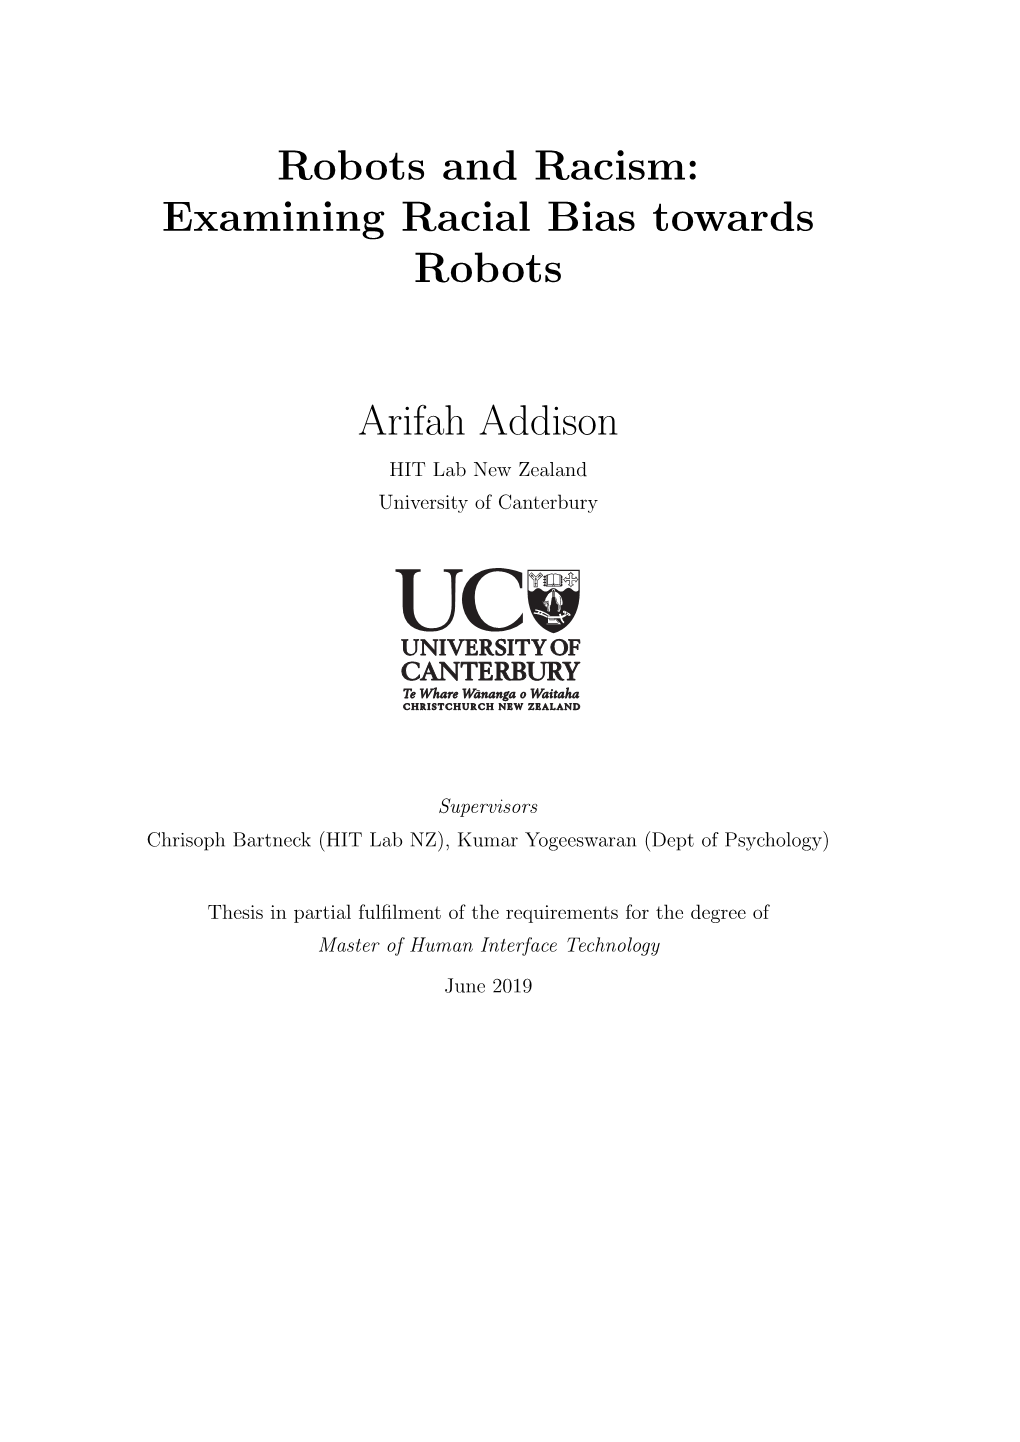 Robots and Racism: Examining Racial Bias Towards Robots Arifah Addison